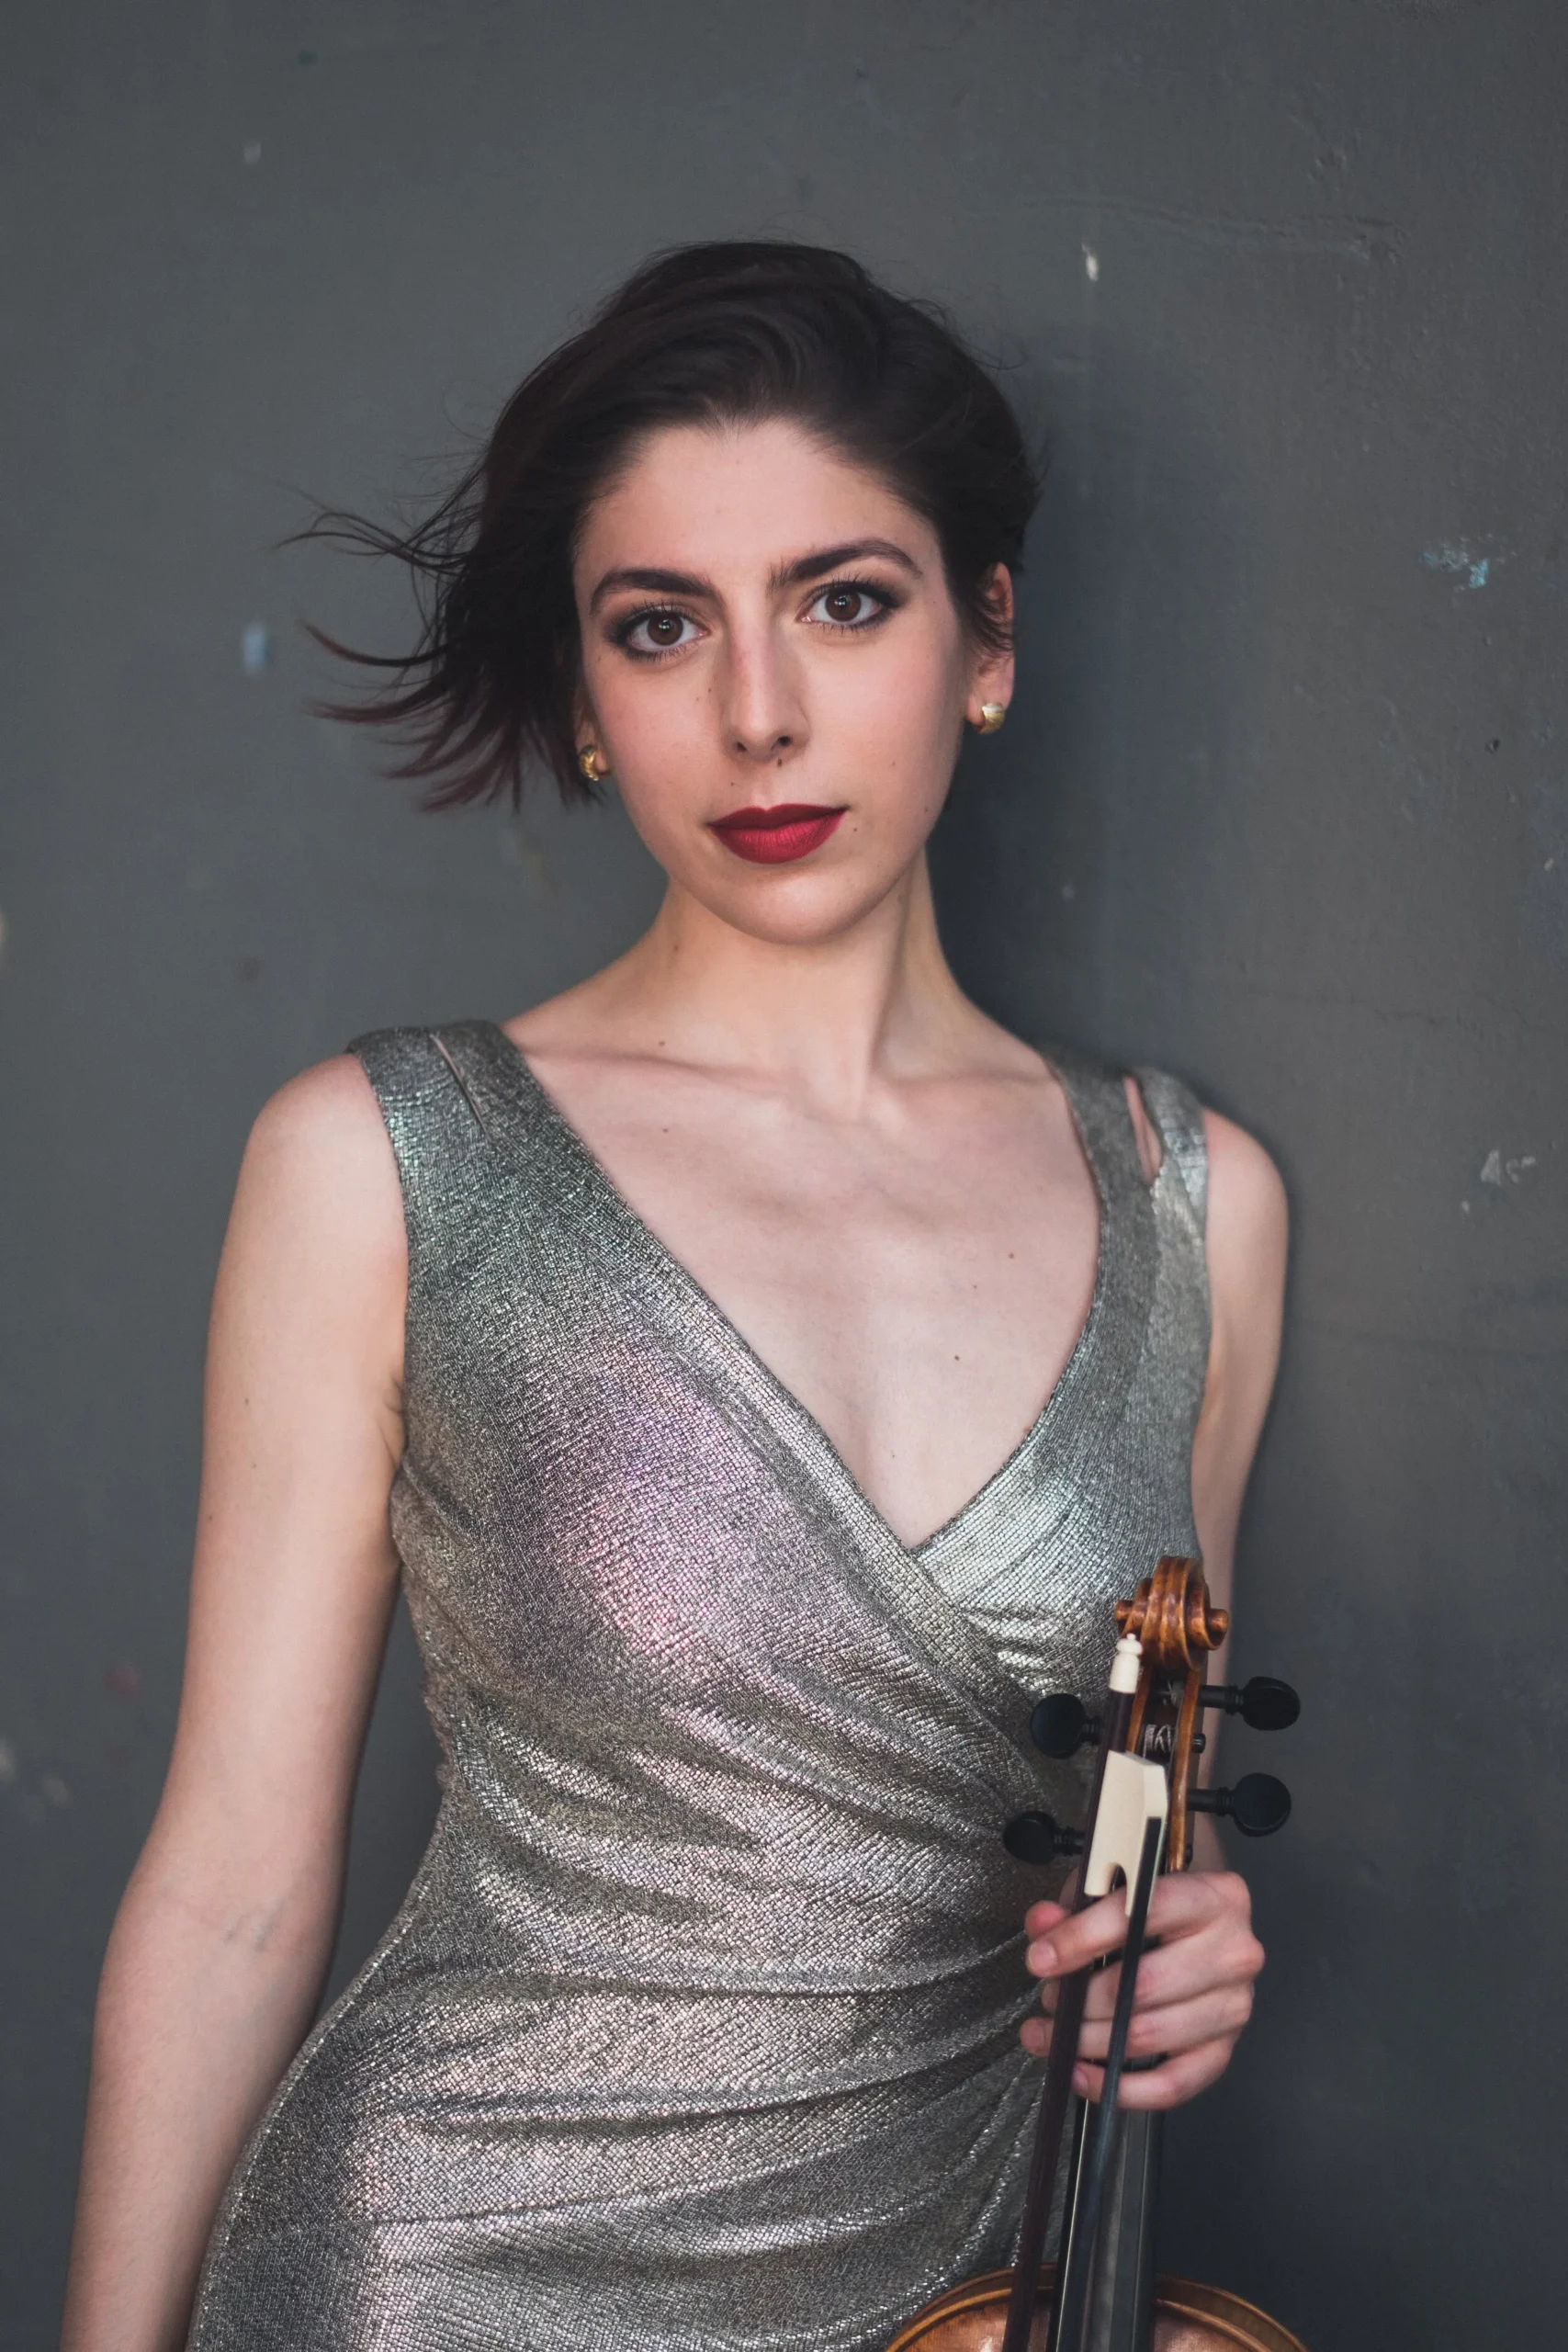 alana youssefian baroque violin - When was baroque violin invented